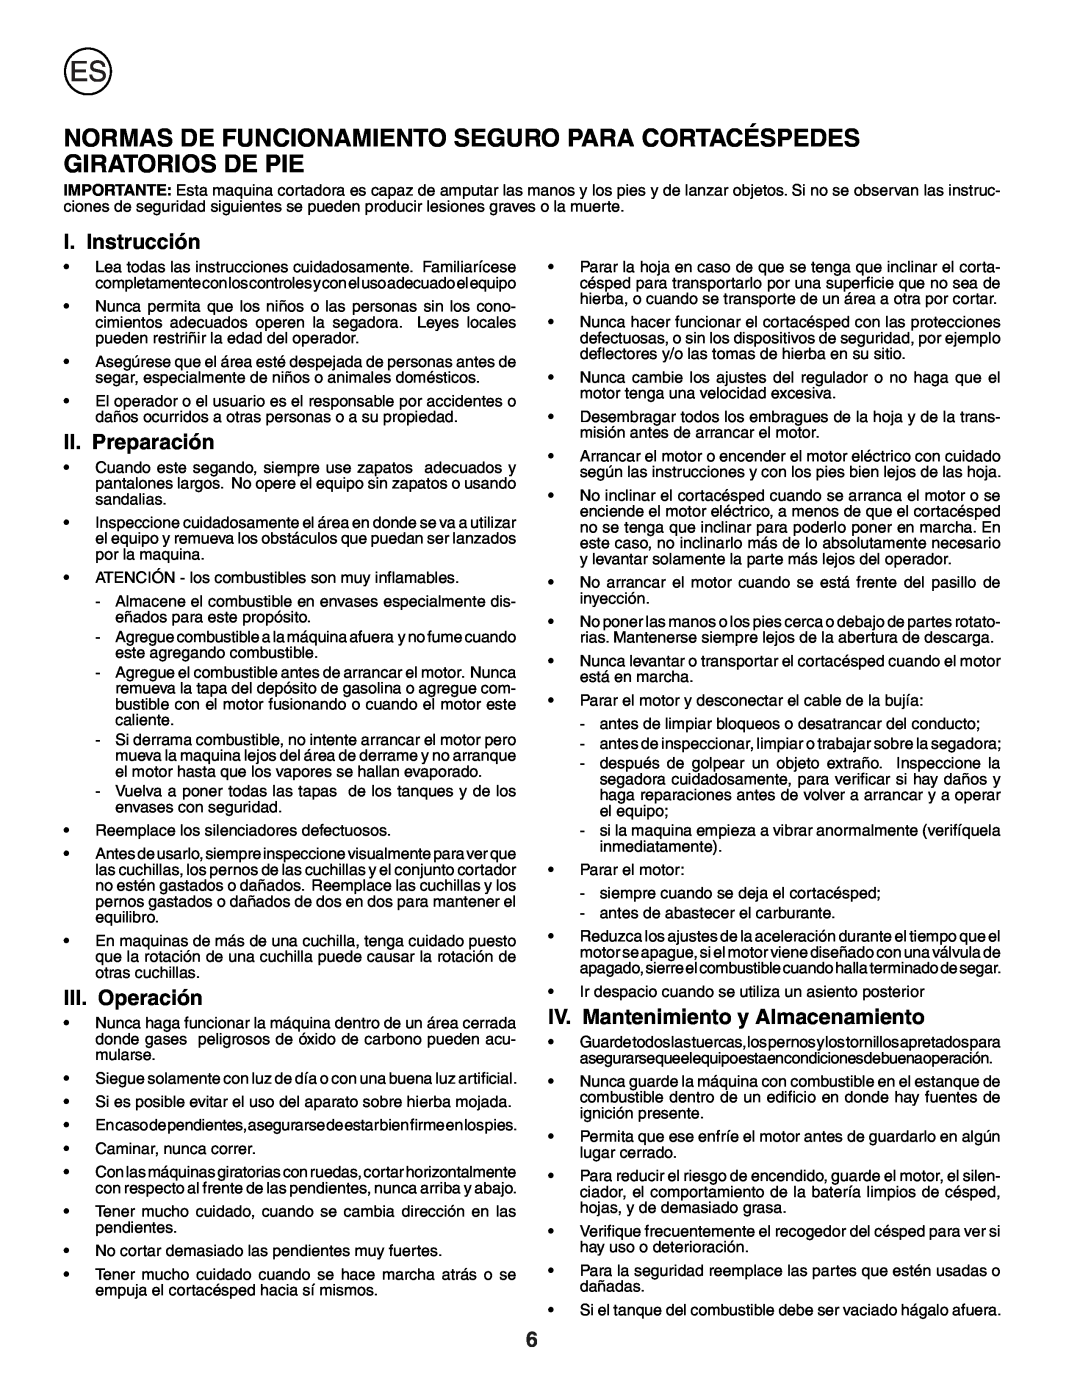 Husqvarna J50 instruction manual I. Instrucción, II. Preparación, III. Operación, IV. Mantenimiento y Almacenamiento 